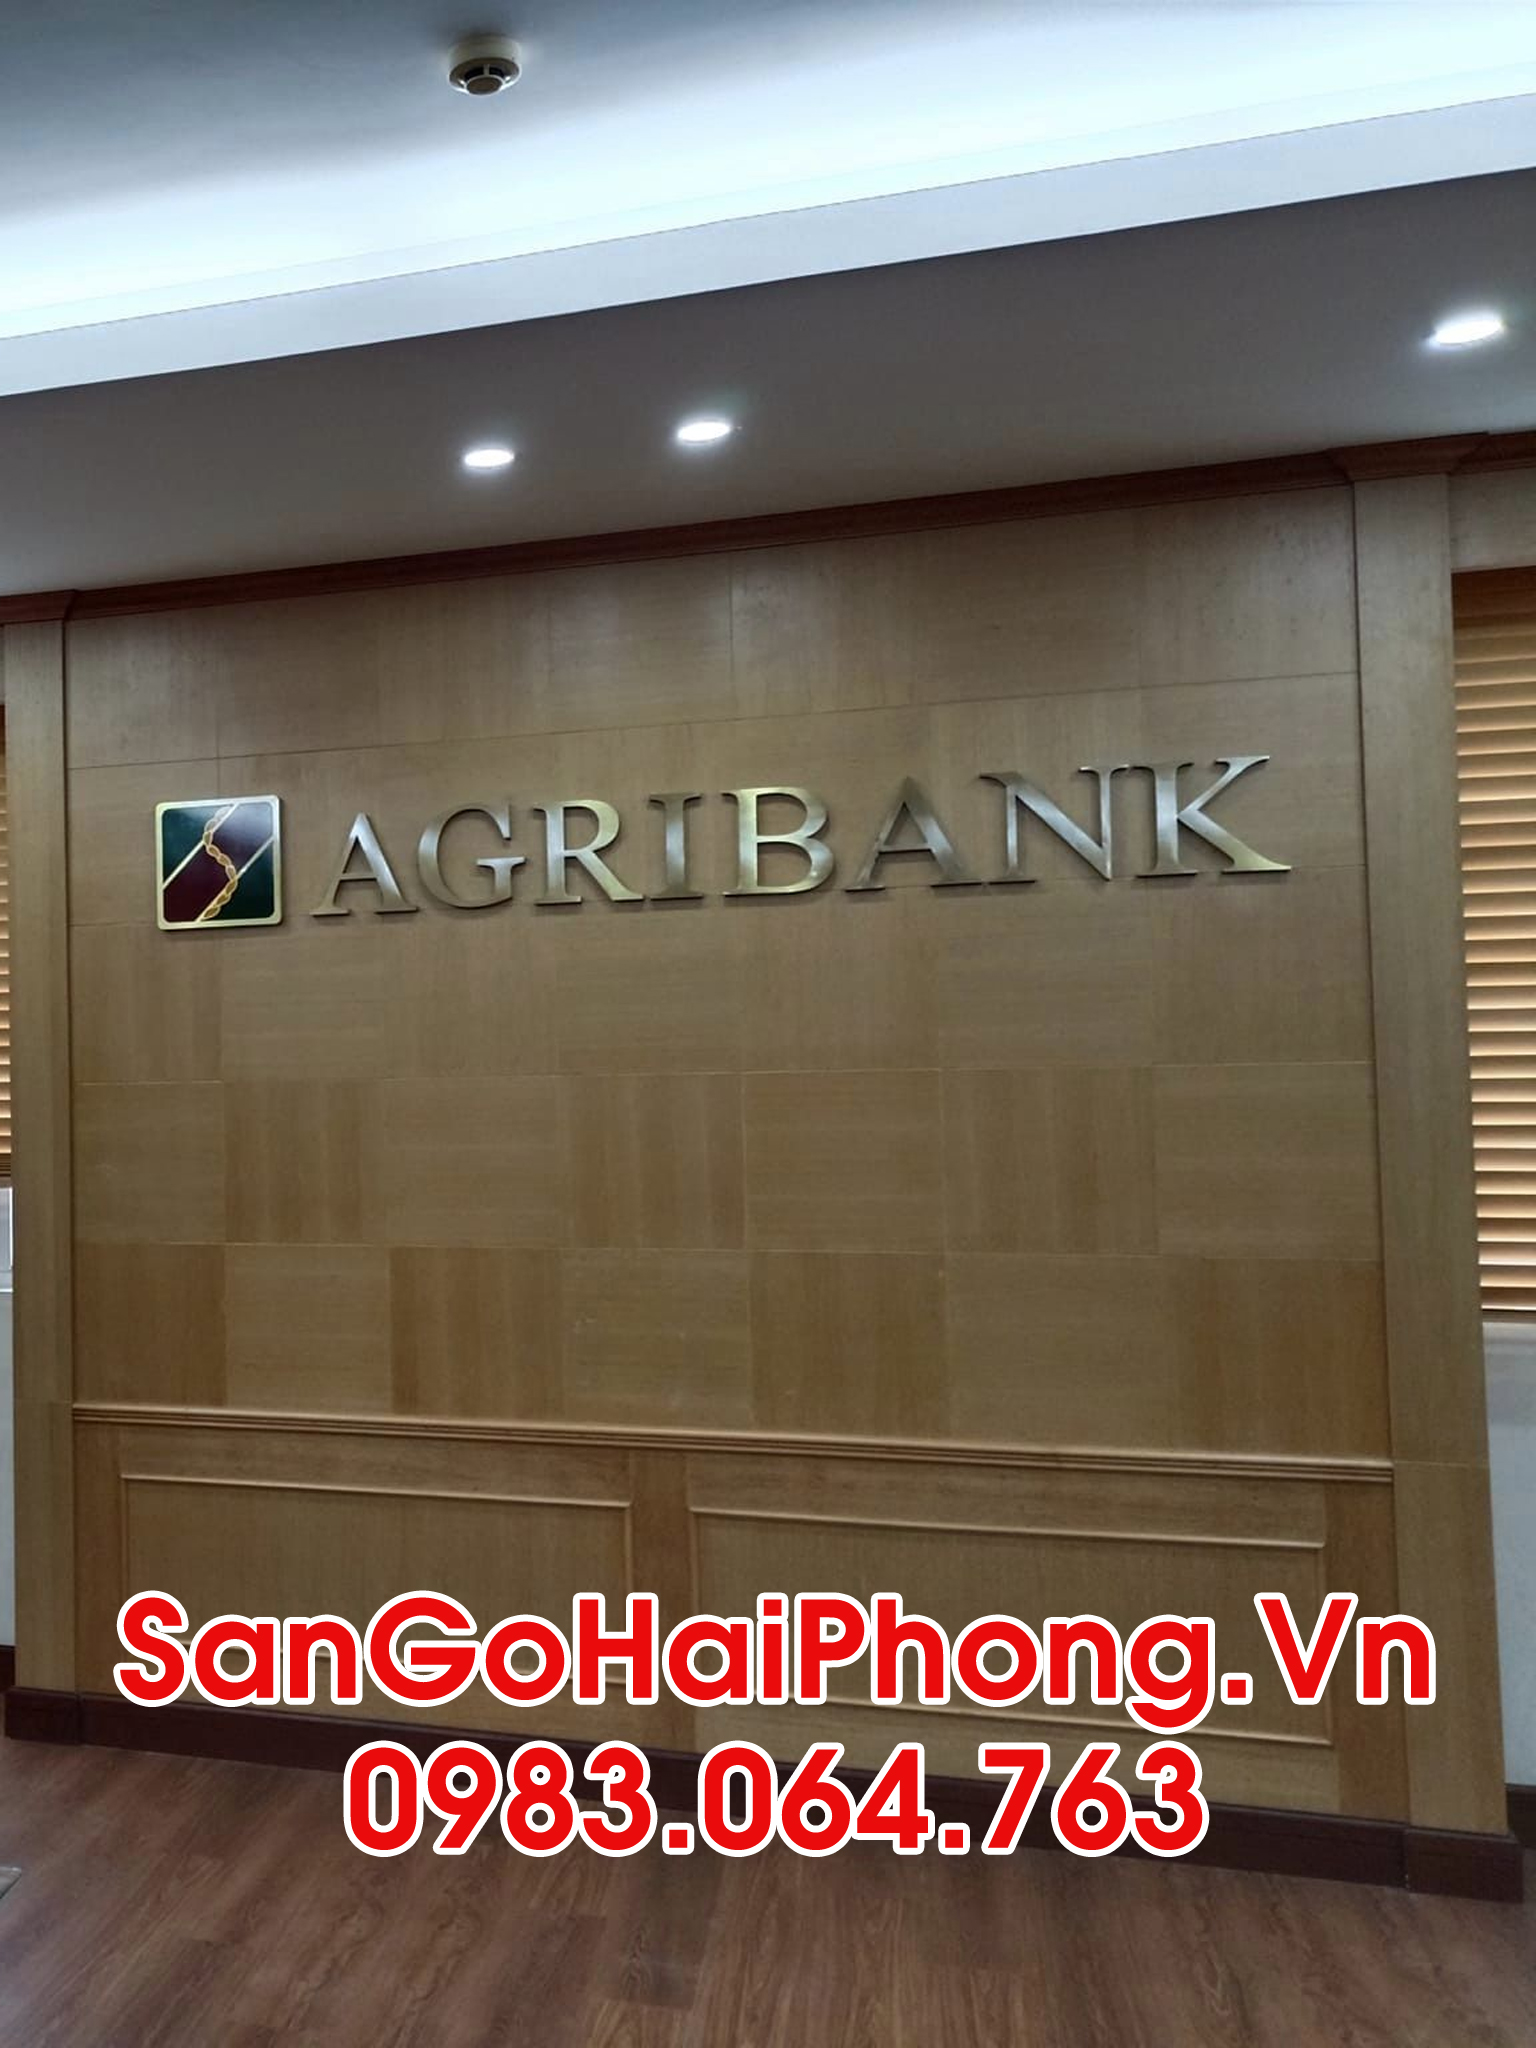 Sàn gỗ Hải Phòng  thi công công trình nhà lãnh đạo ngân hàng AgriBank Thượng Lý Hải Phòng